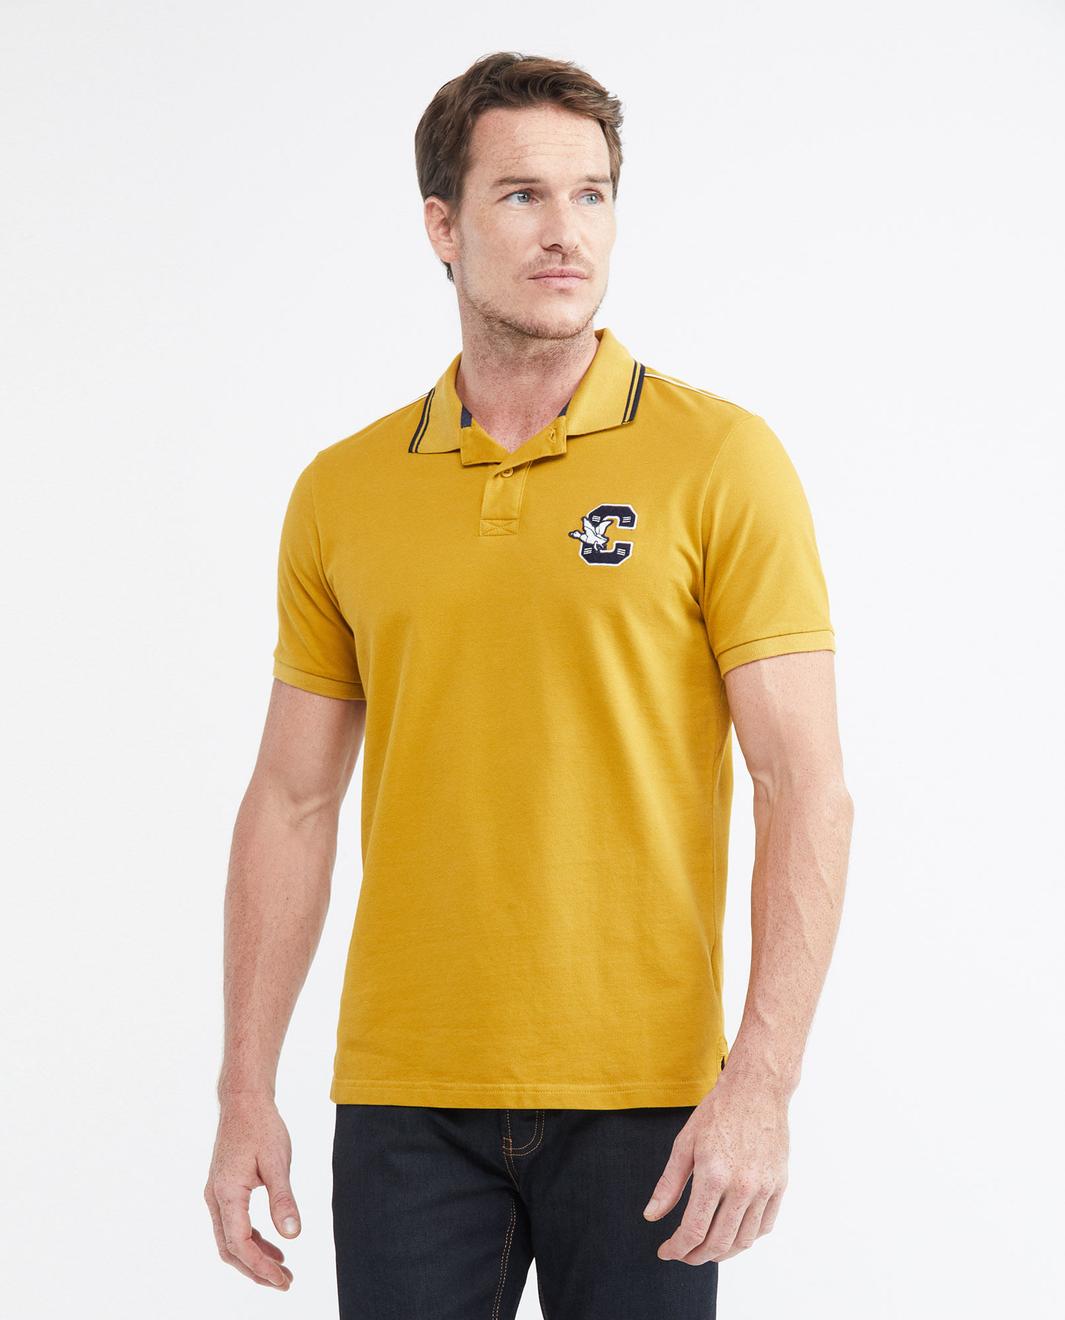 Oferta de Camiseta de Hombre Tipo Polo, Slim Fit Manga Corta - Vivo en Hombros por $84950 en Chevignon